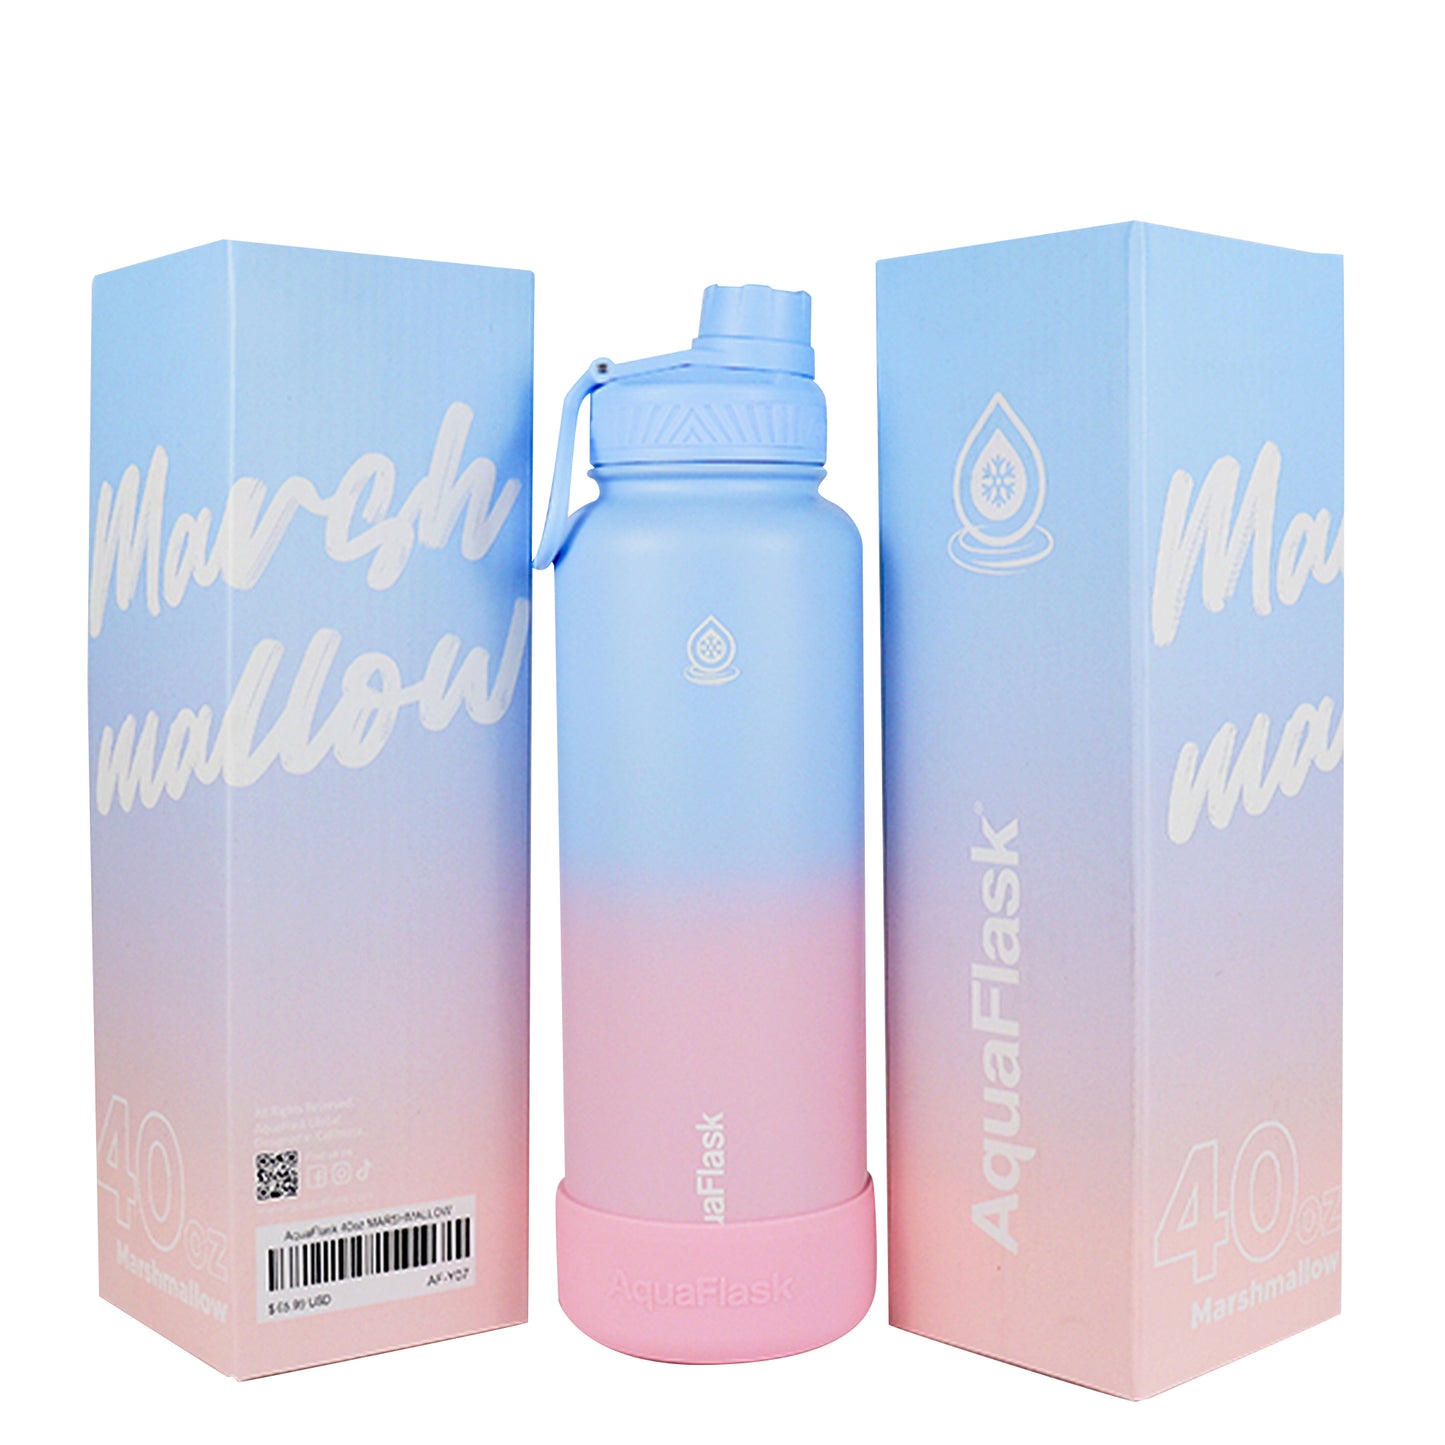 AquaFlask Dream 1 Vacuum Insulated Water Bottles 1180ml (40oz)